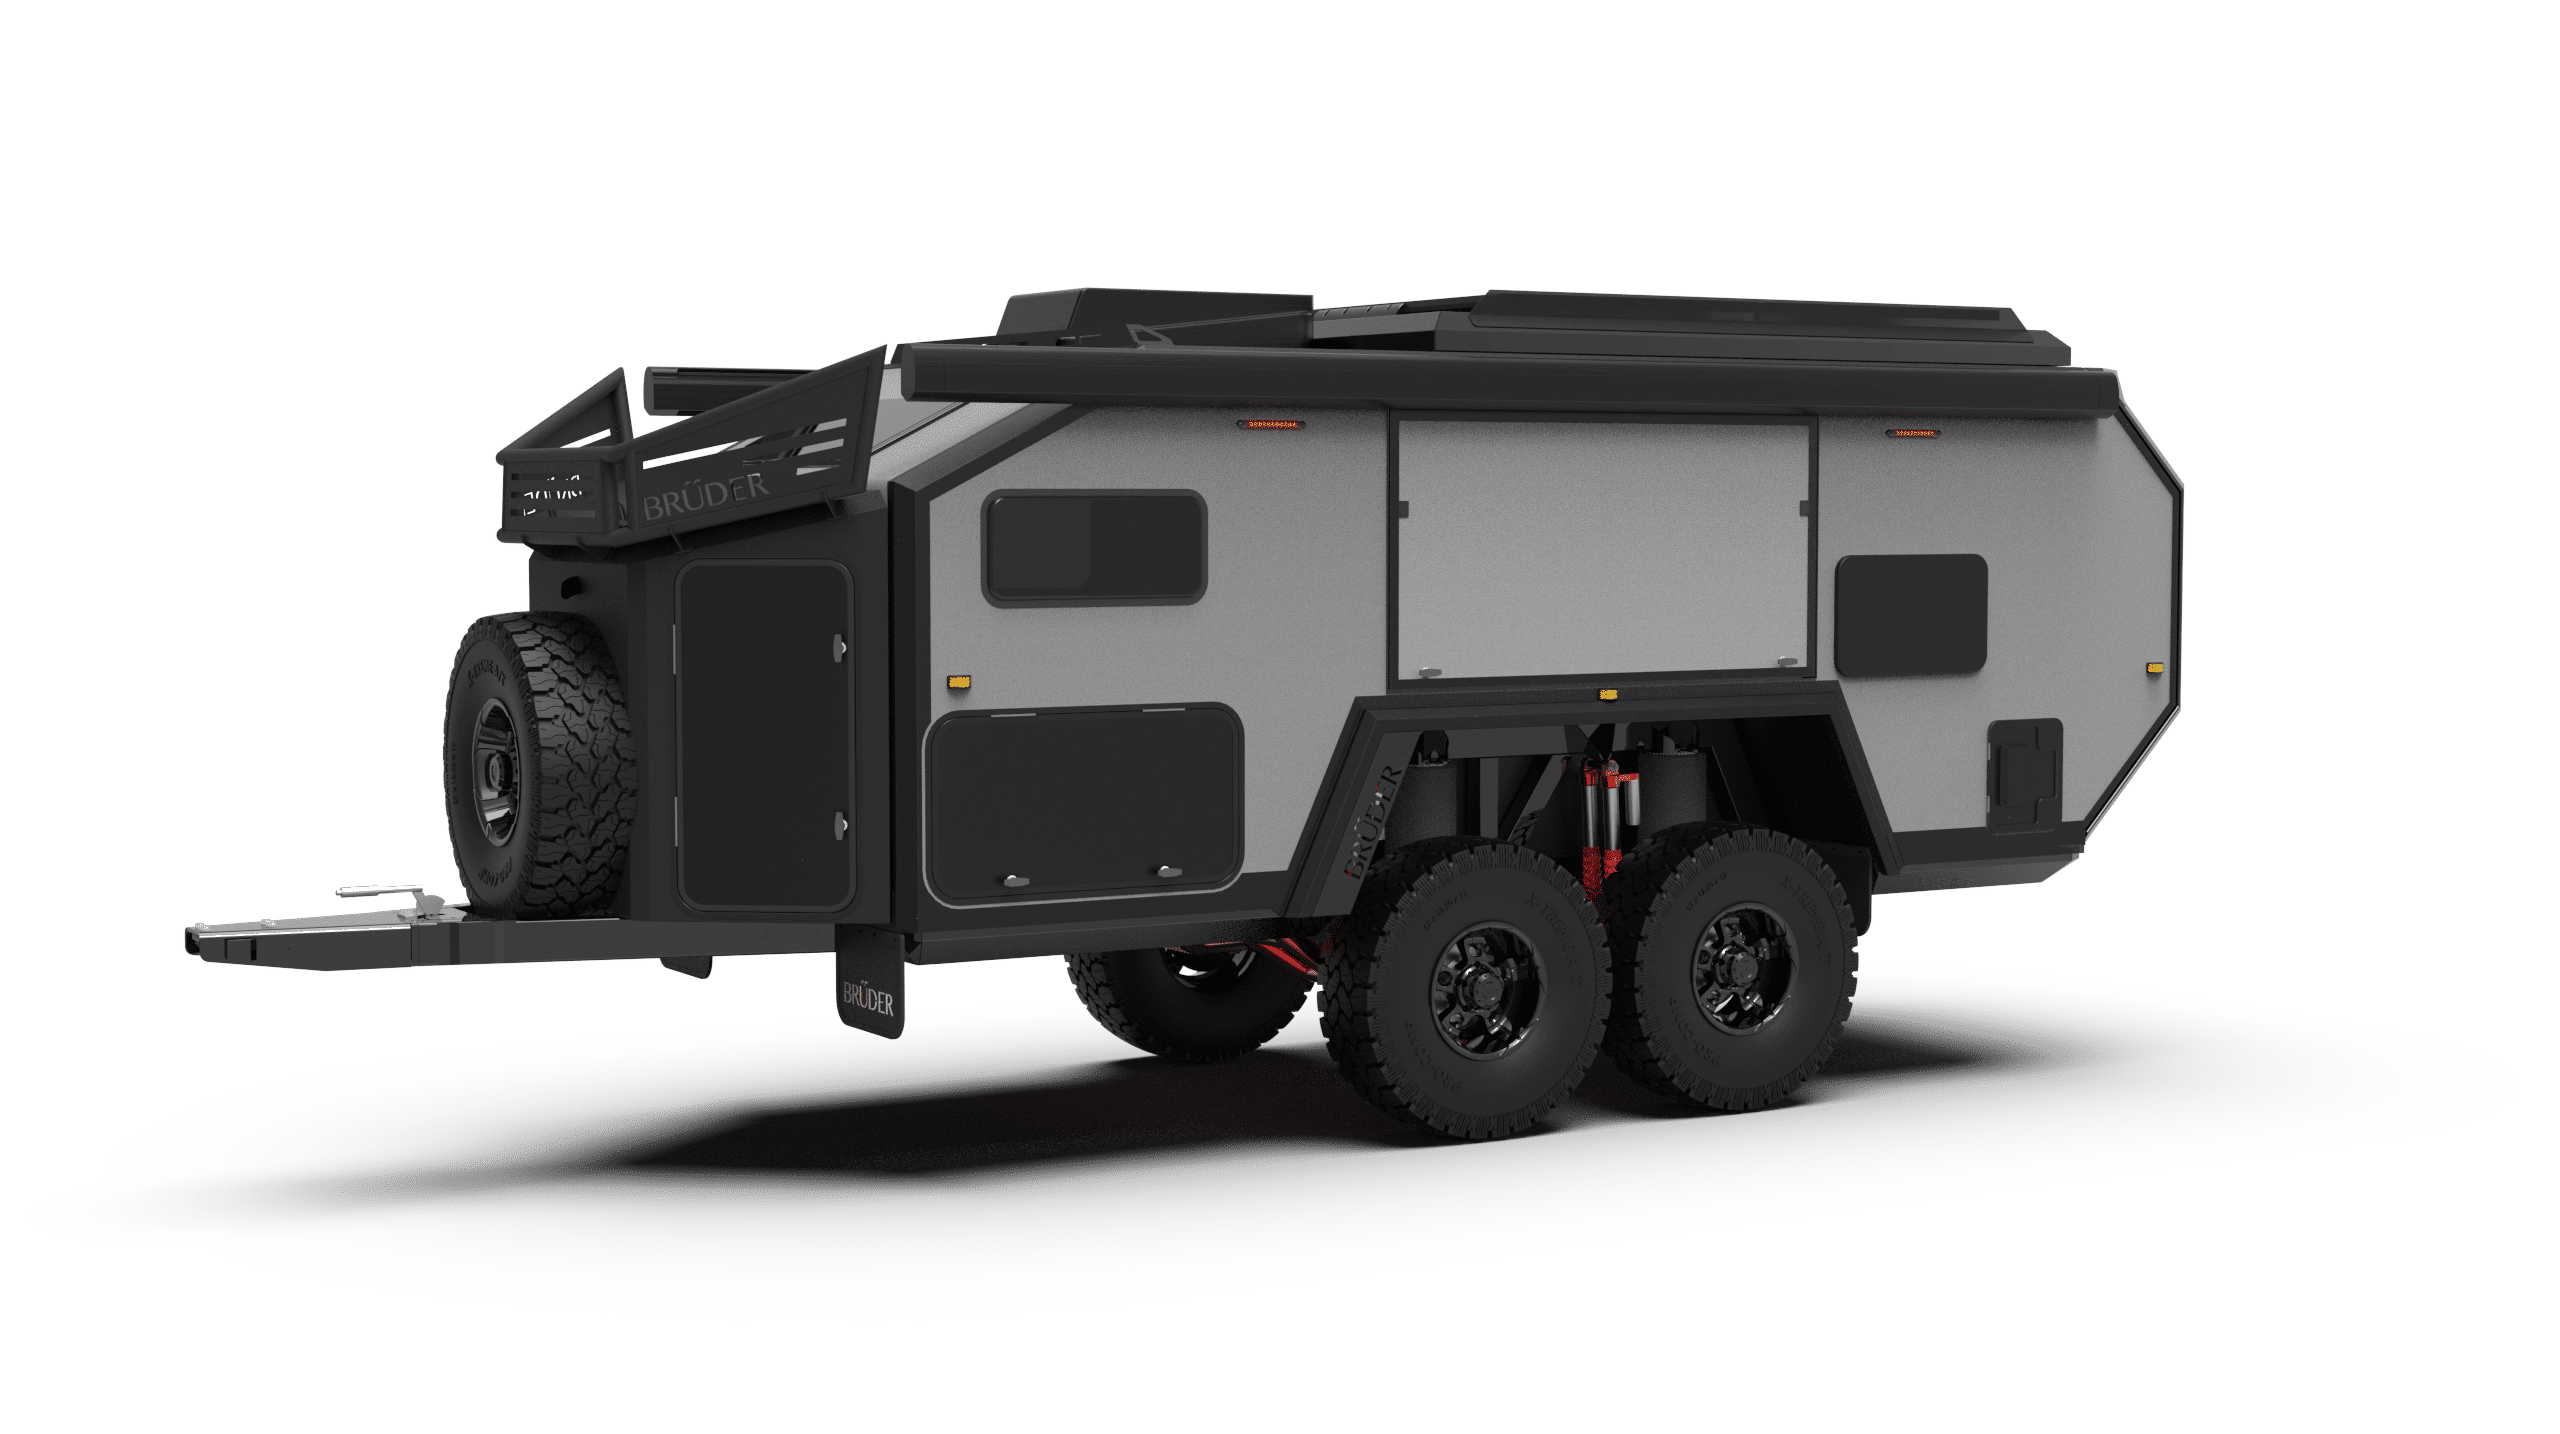 Bruder EXP-6 off road off grid hybrid camper trailer caravan 4x4